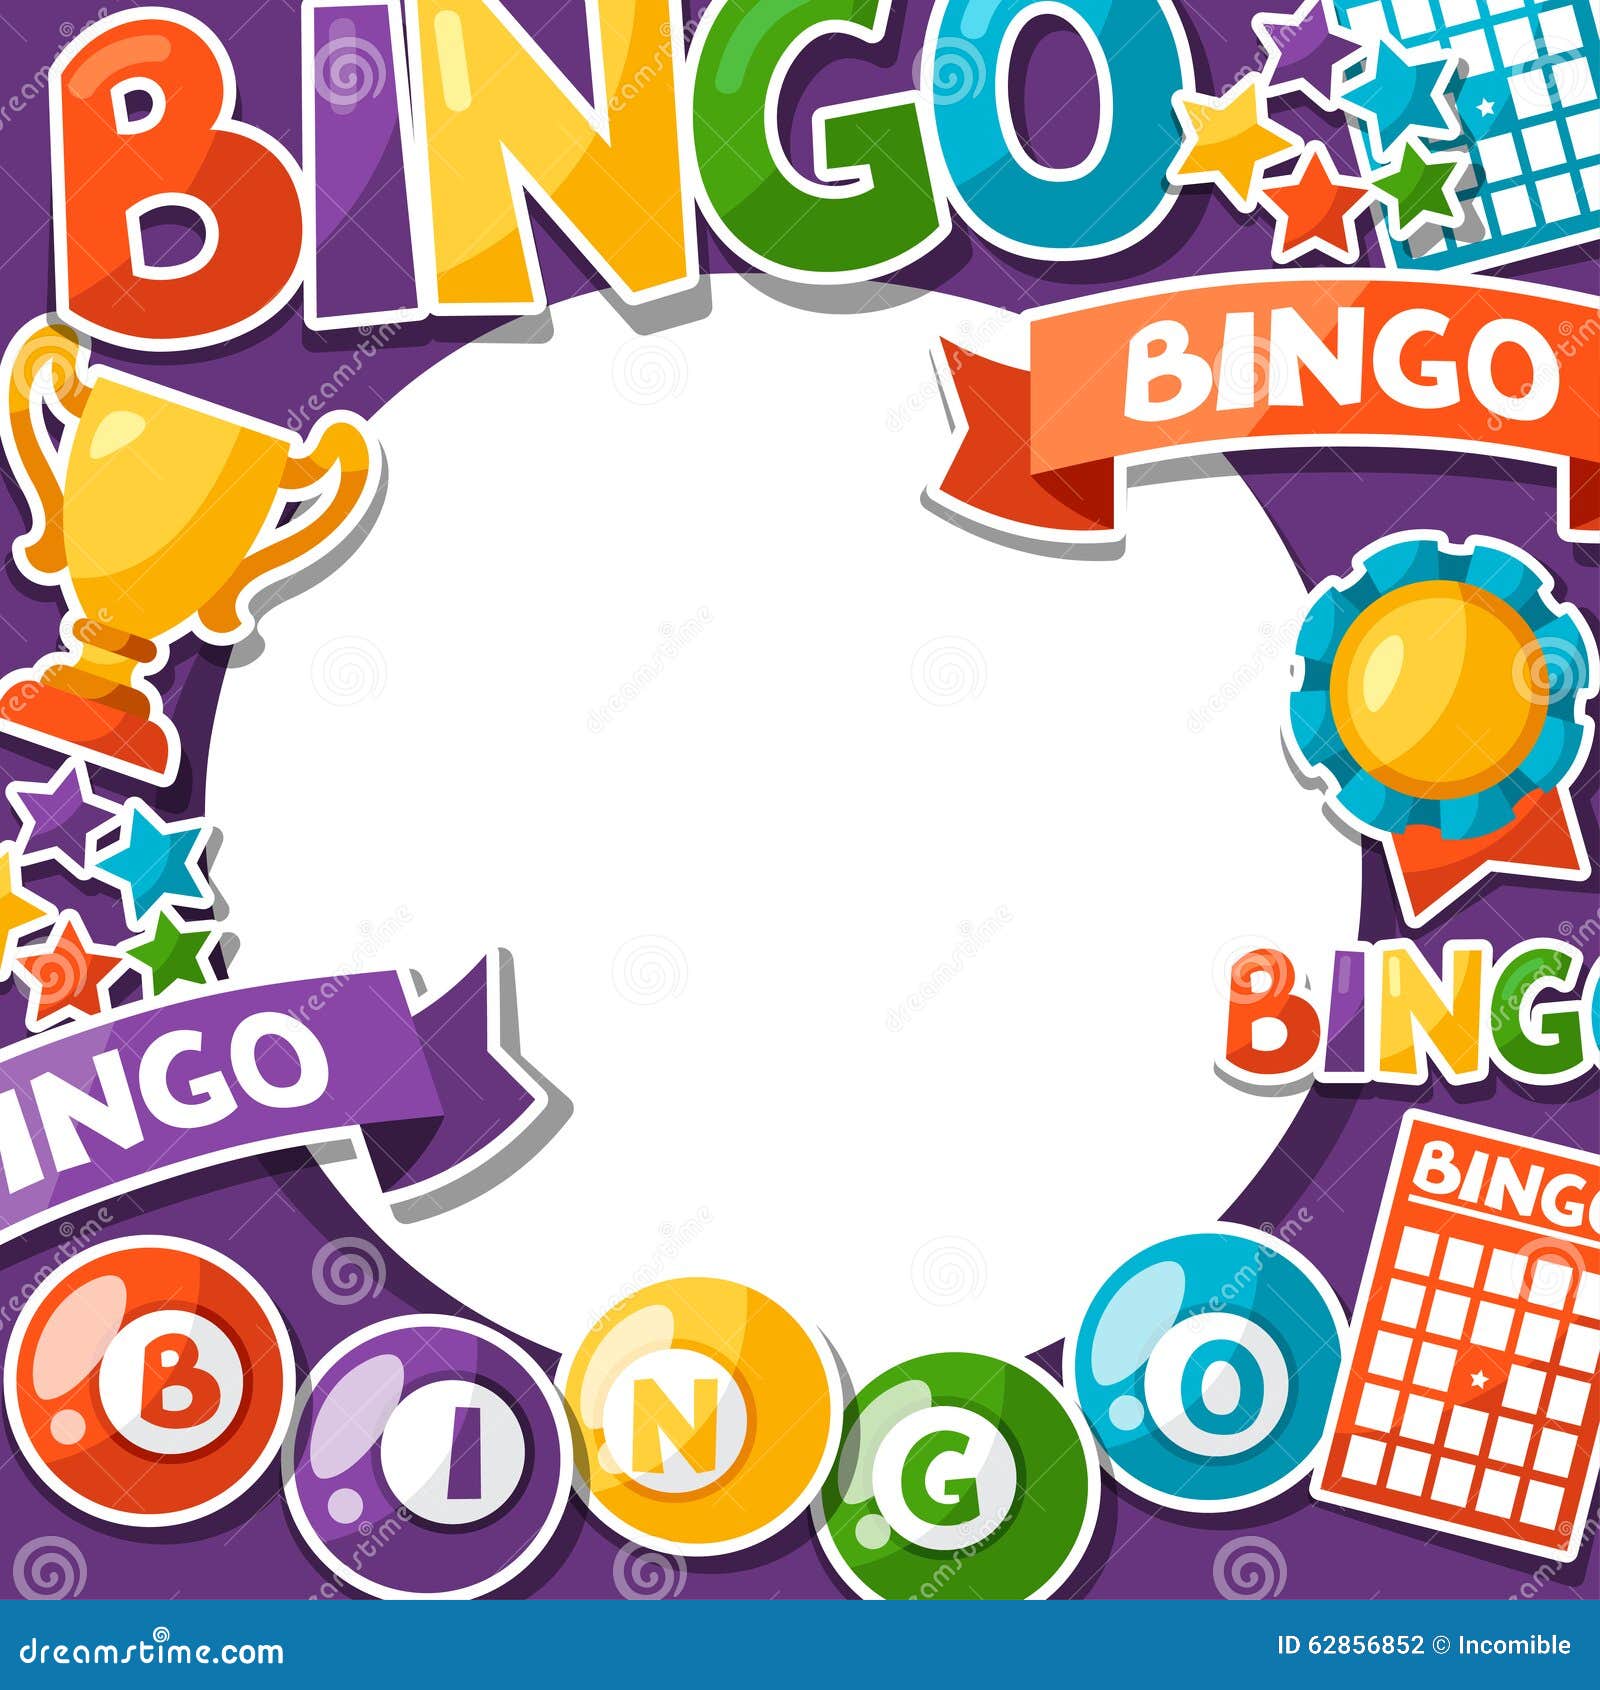 Bingo gratis descargar juego de loteria Almada - 18619